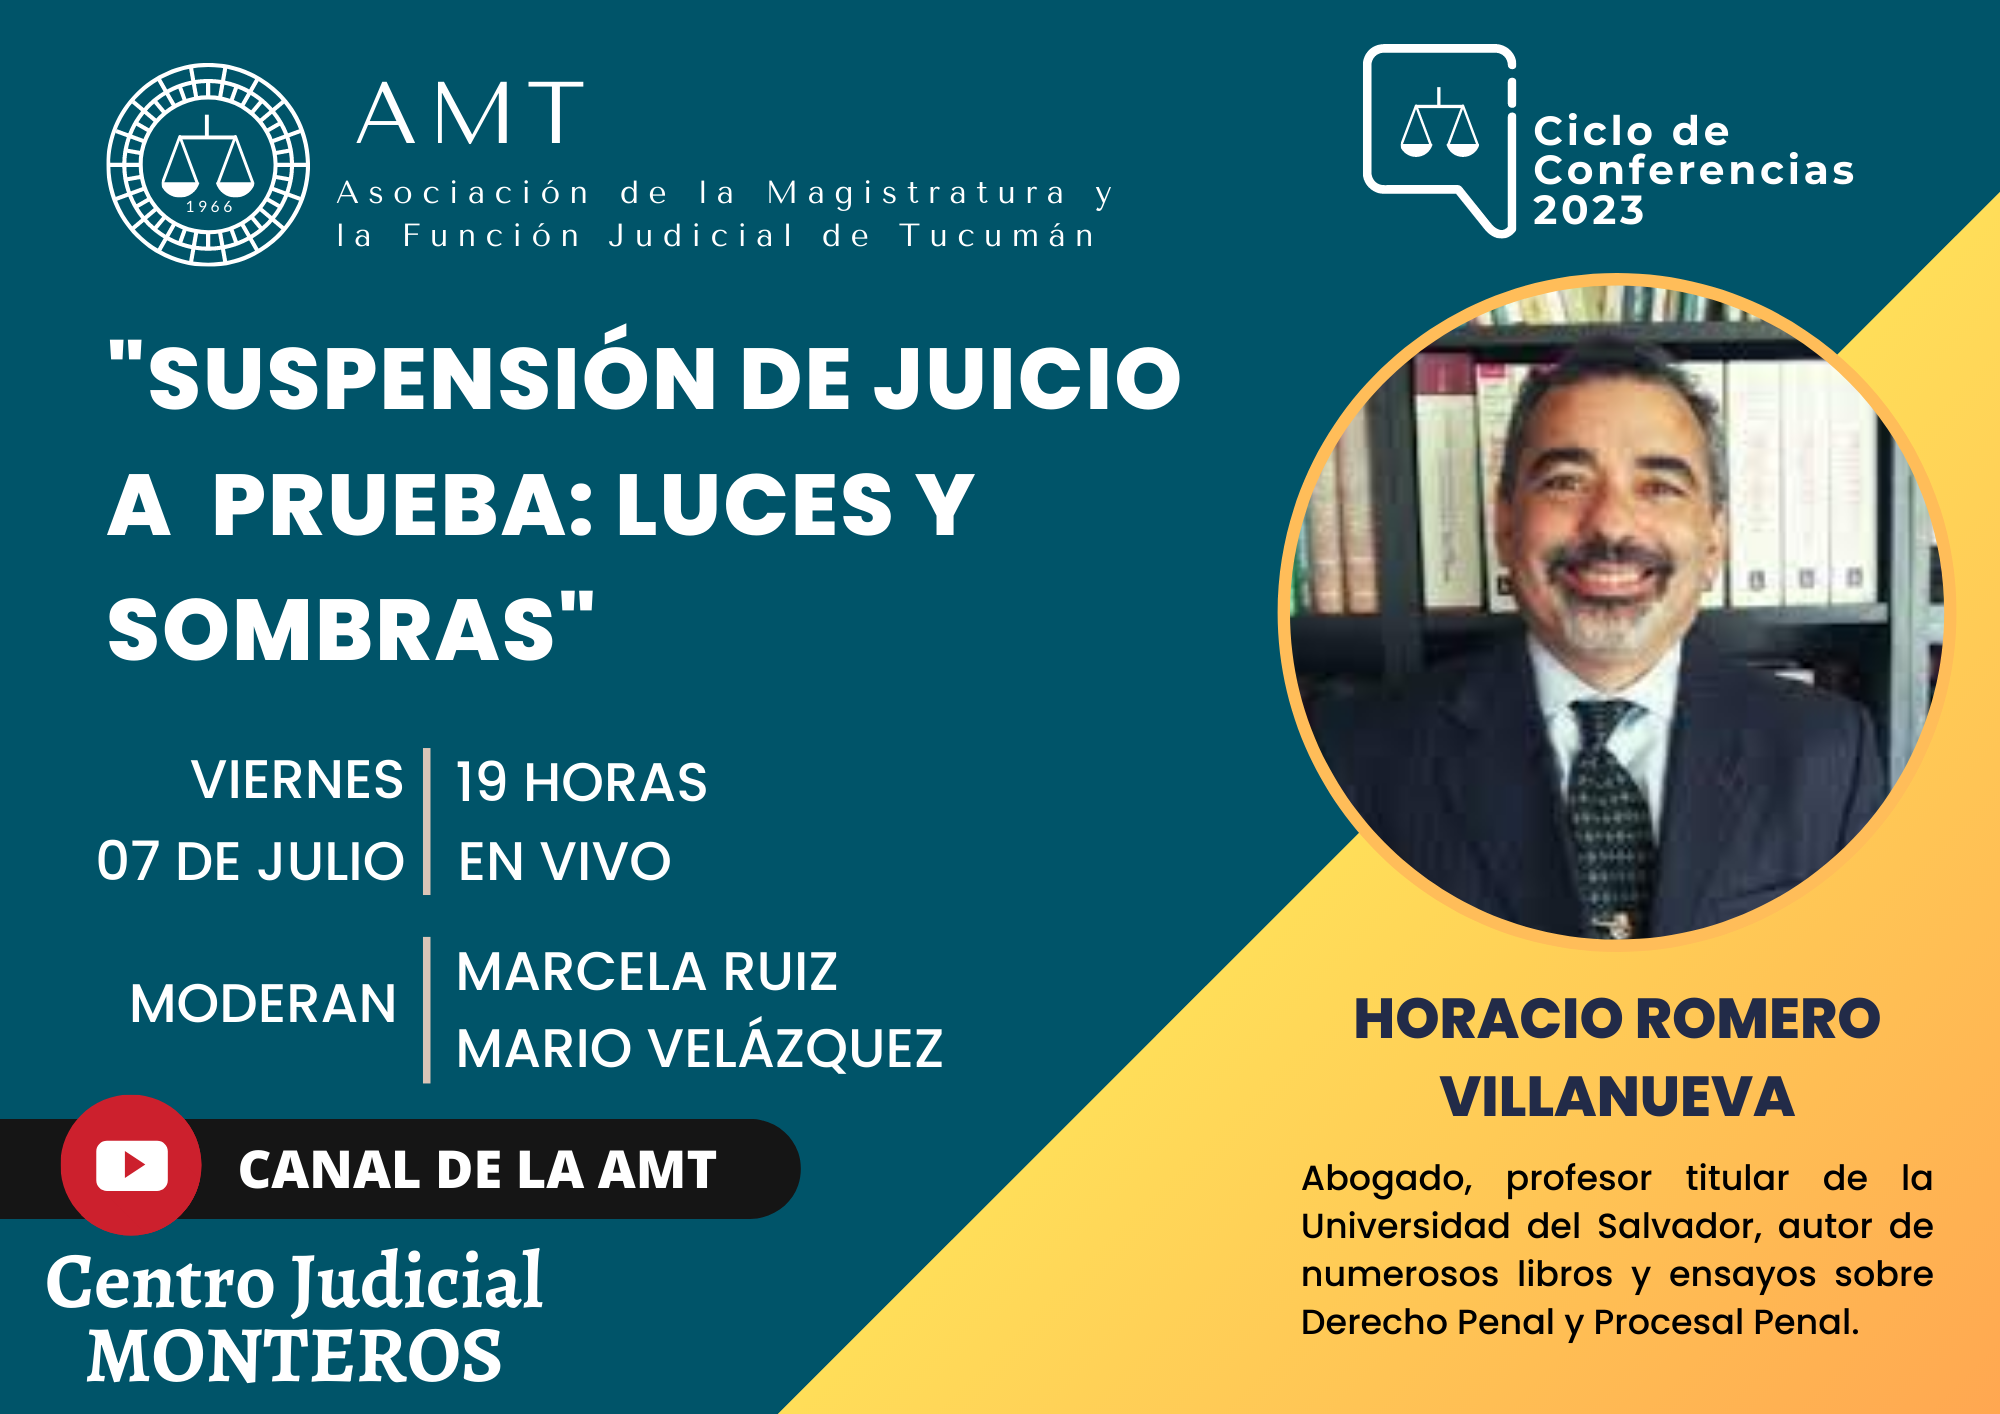 Vuelva a ver la conferencia de Horacio Romero Villanueva «Suspensión de juicio a prueba: Luces y Sombras»